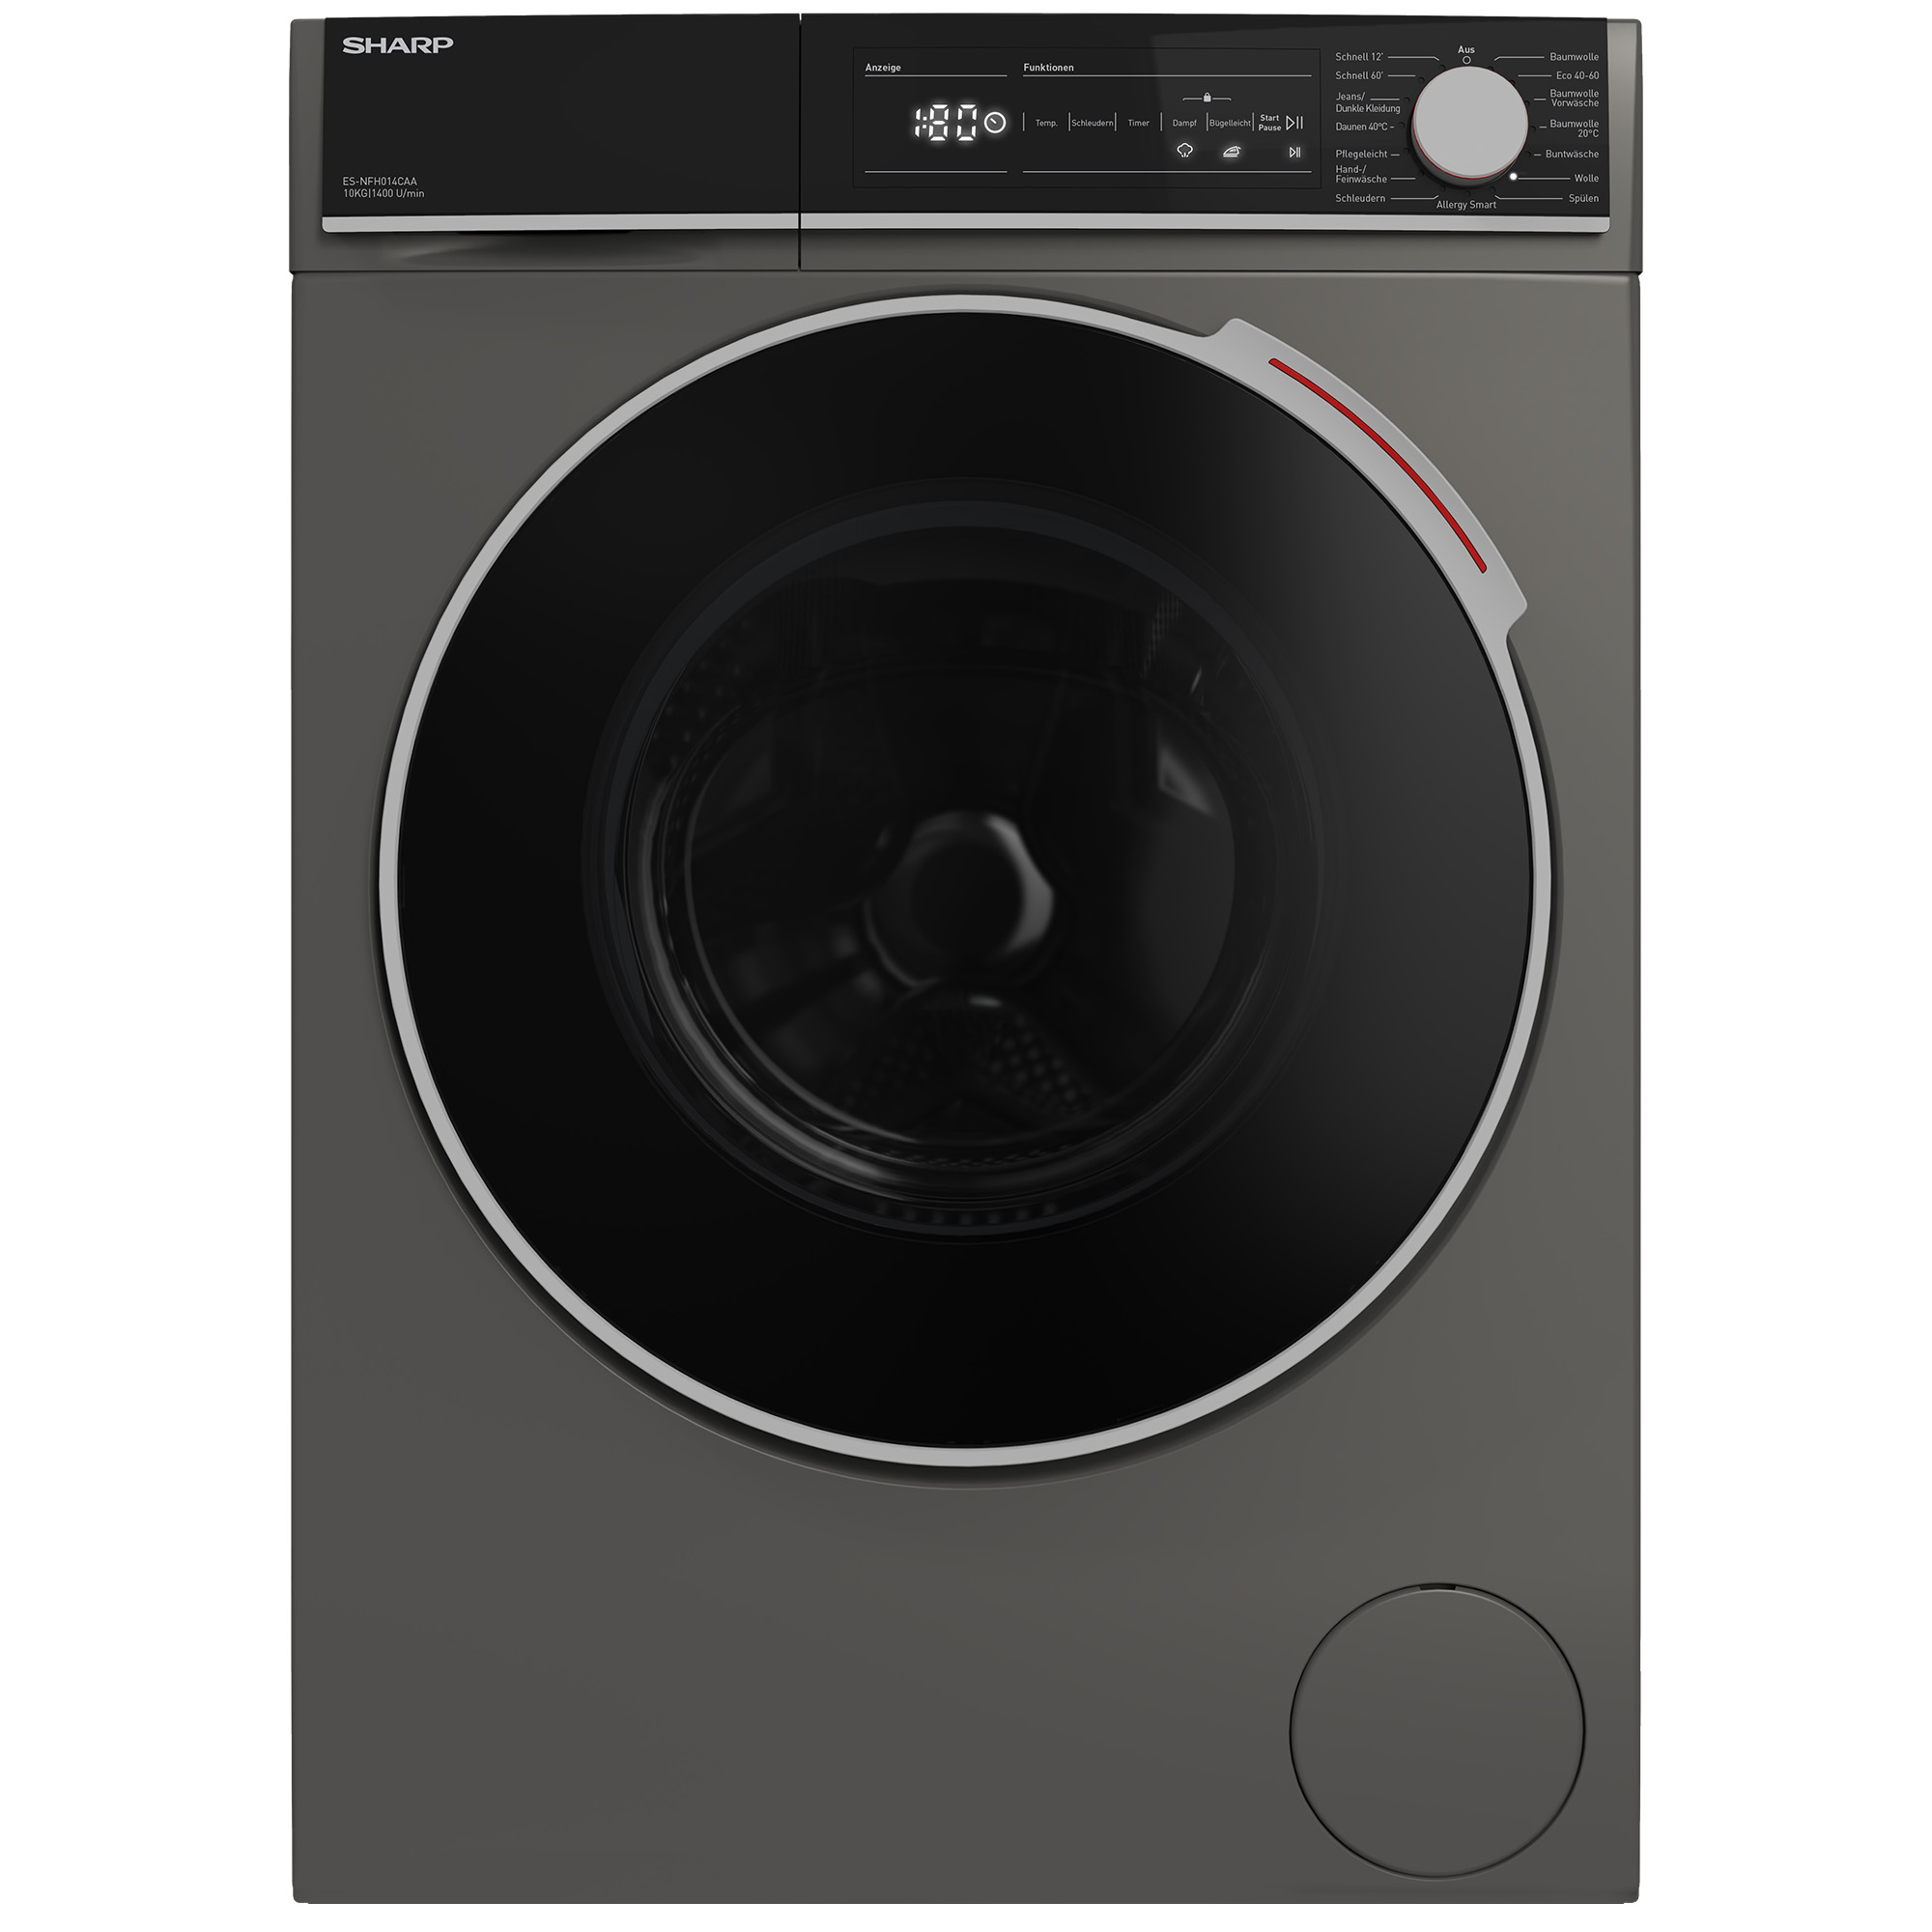 SHARP ES-NFH014CAA-DE Waschmaschine (10 kg, A)